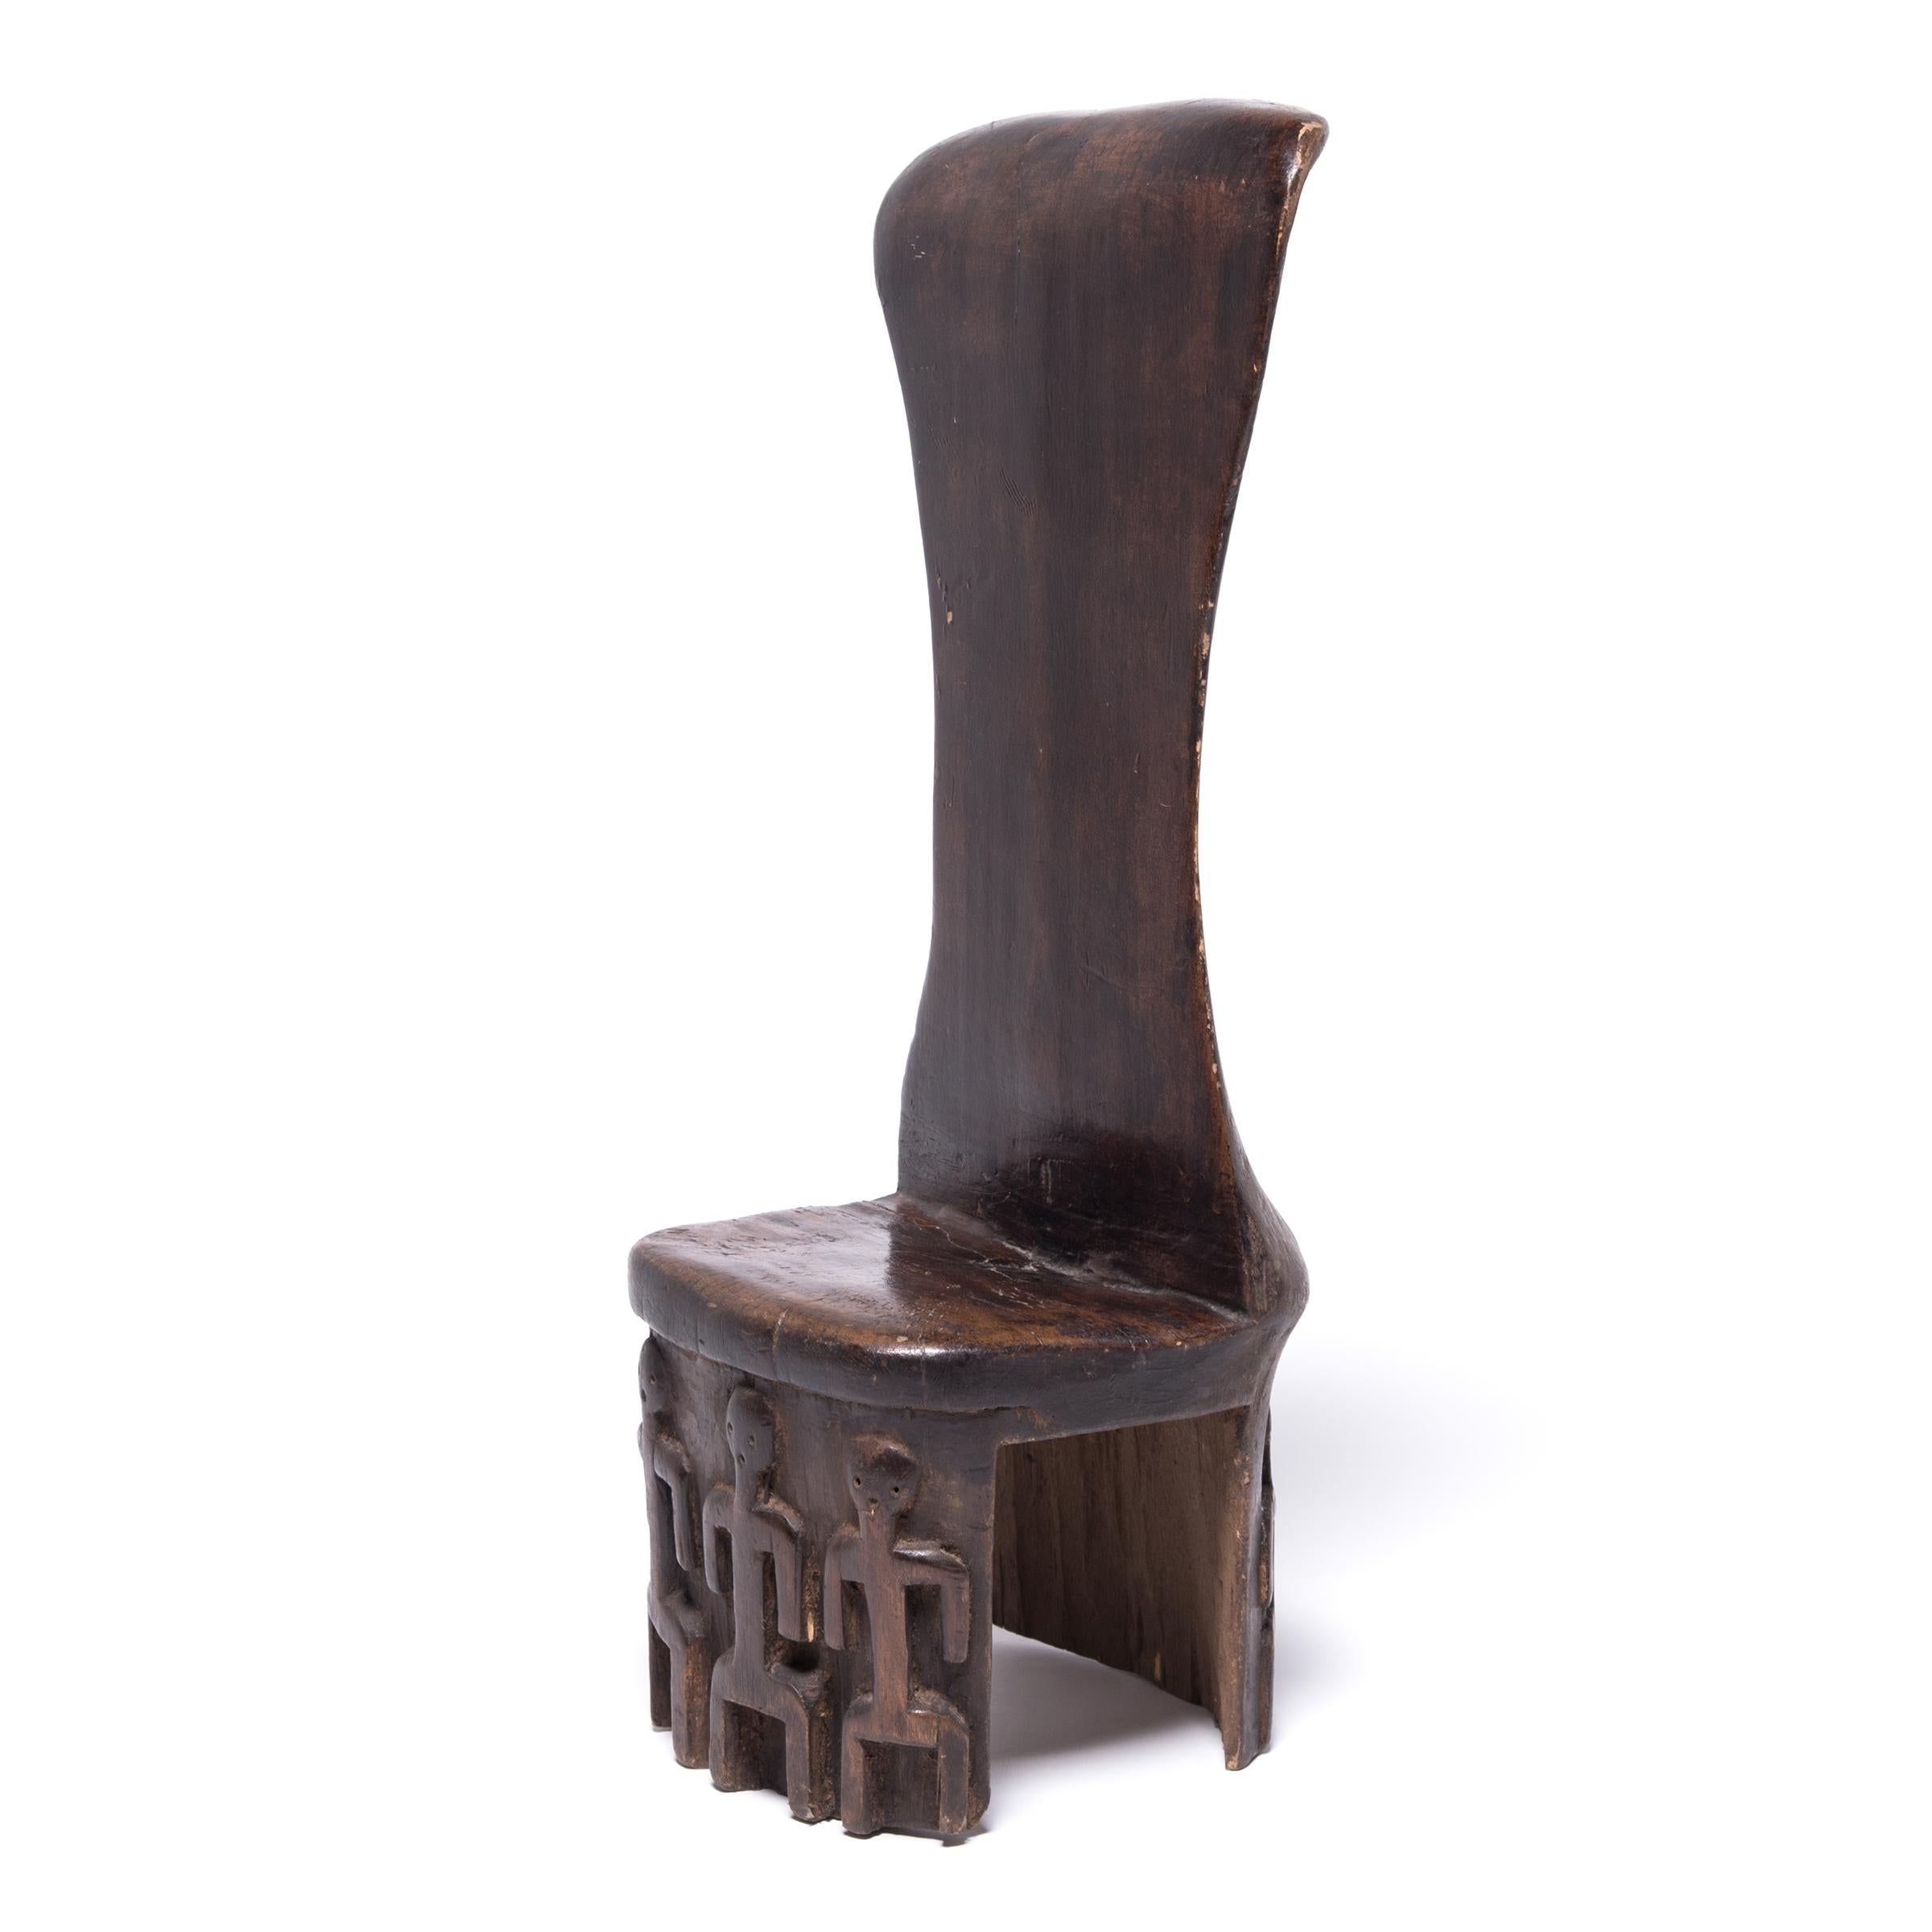 Réputés pour leur société individualiste, égalitaire et progressiste, les Baoulé de Côte d'Ivoire étaient des maîtres artisans. Cette chaise présente leur style caractéristique de travail du bois bien poli. Les individus à la base suggèrent une